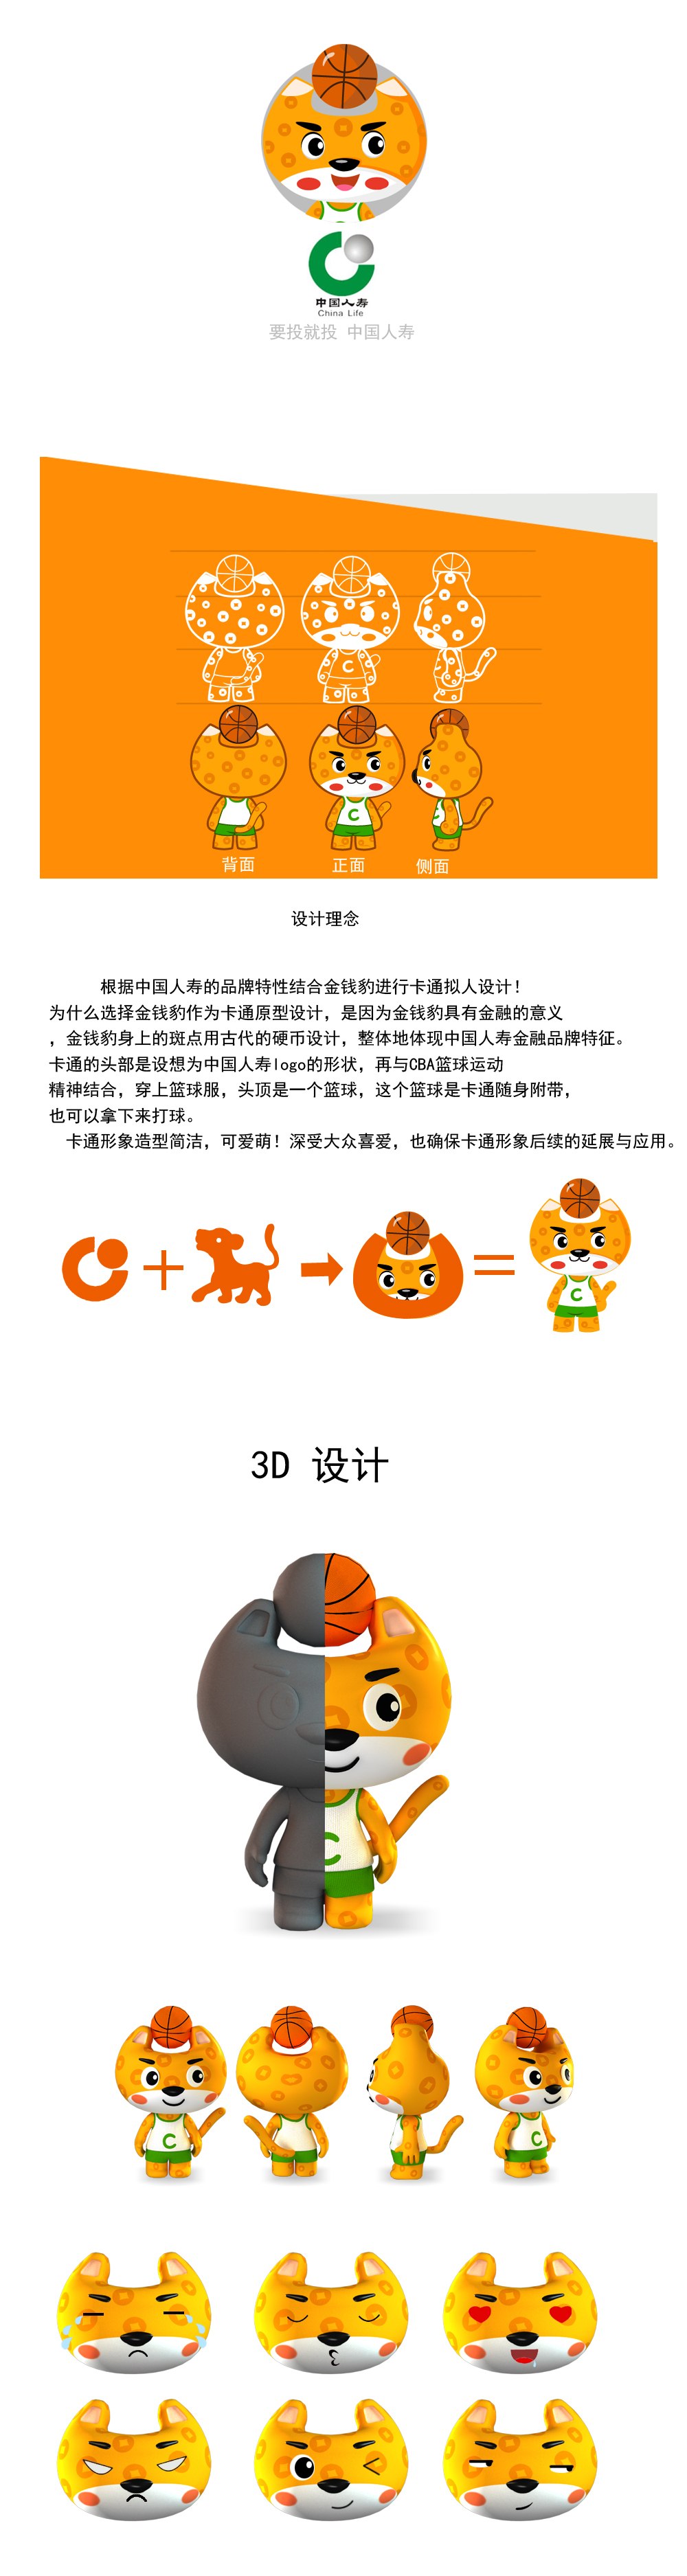 中国人寿吉祥物设计图1